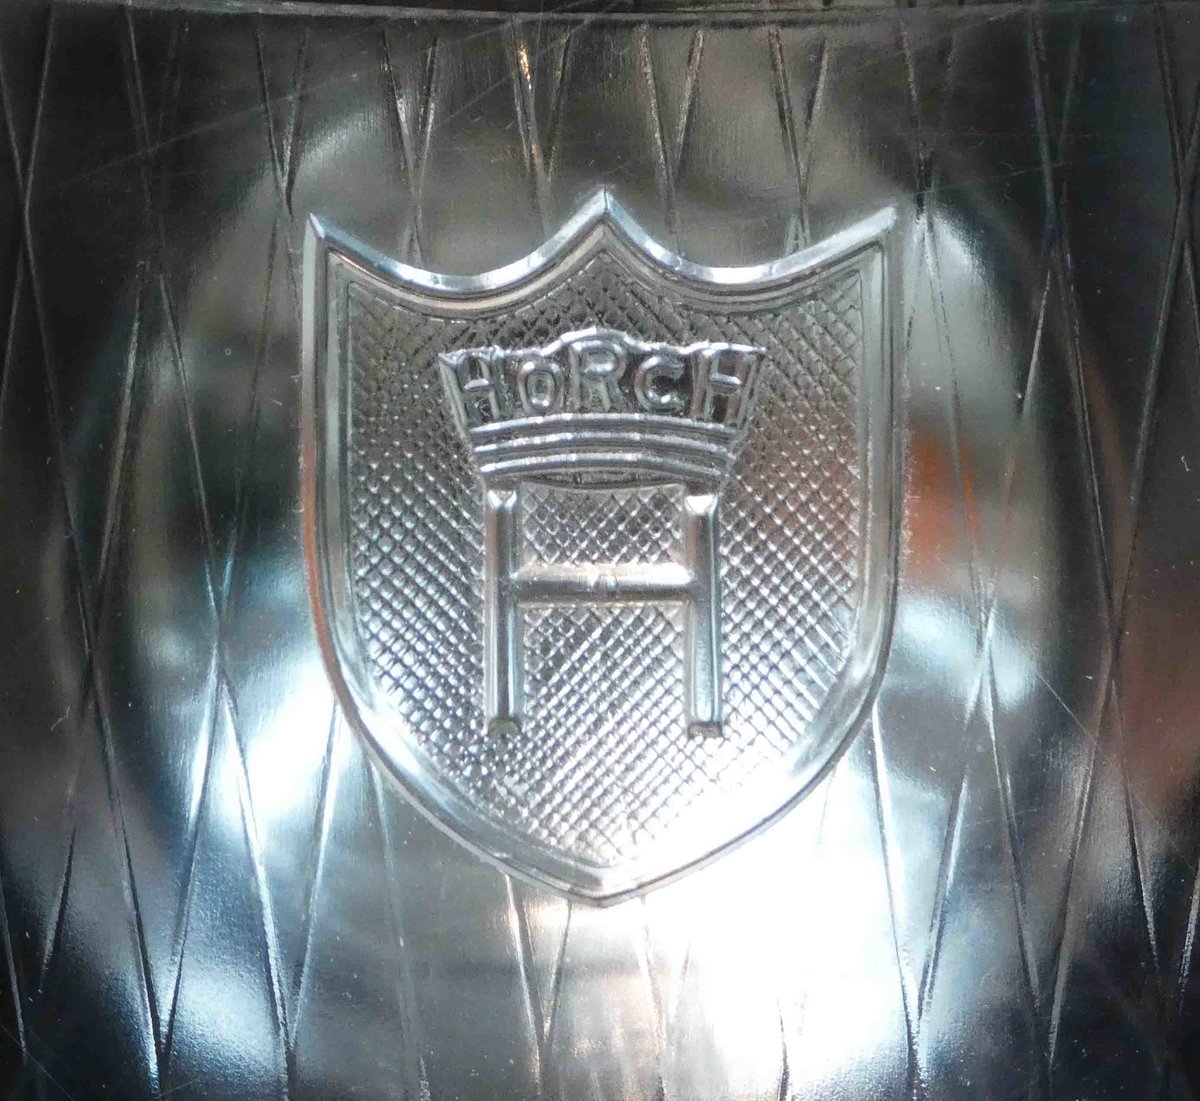 =Horch-Logo im Scheinwerferglas des Horch 375 Pullmann, Bj. 1930, 3950 ccm, 80 PS, gesehen im August Horch Museum Zwickau, Juli 2016.